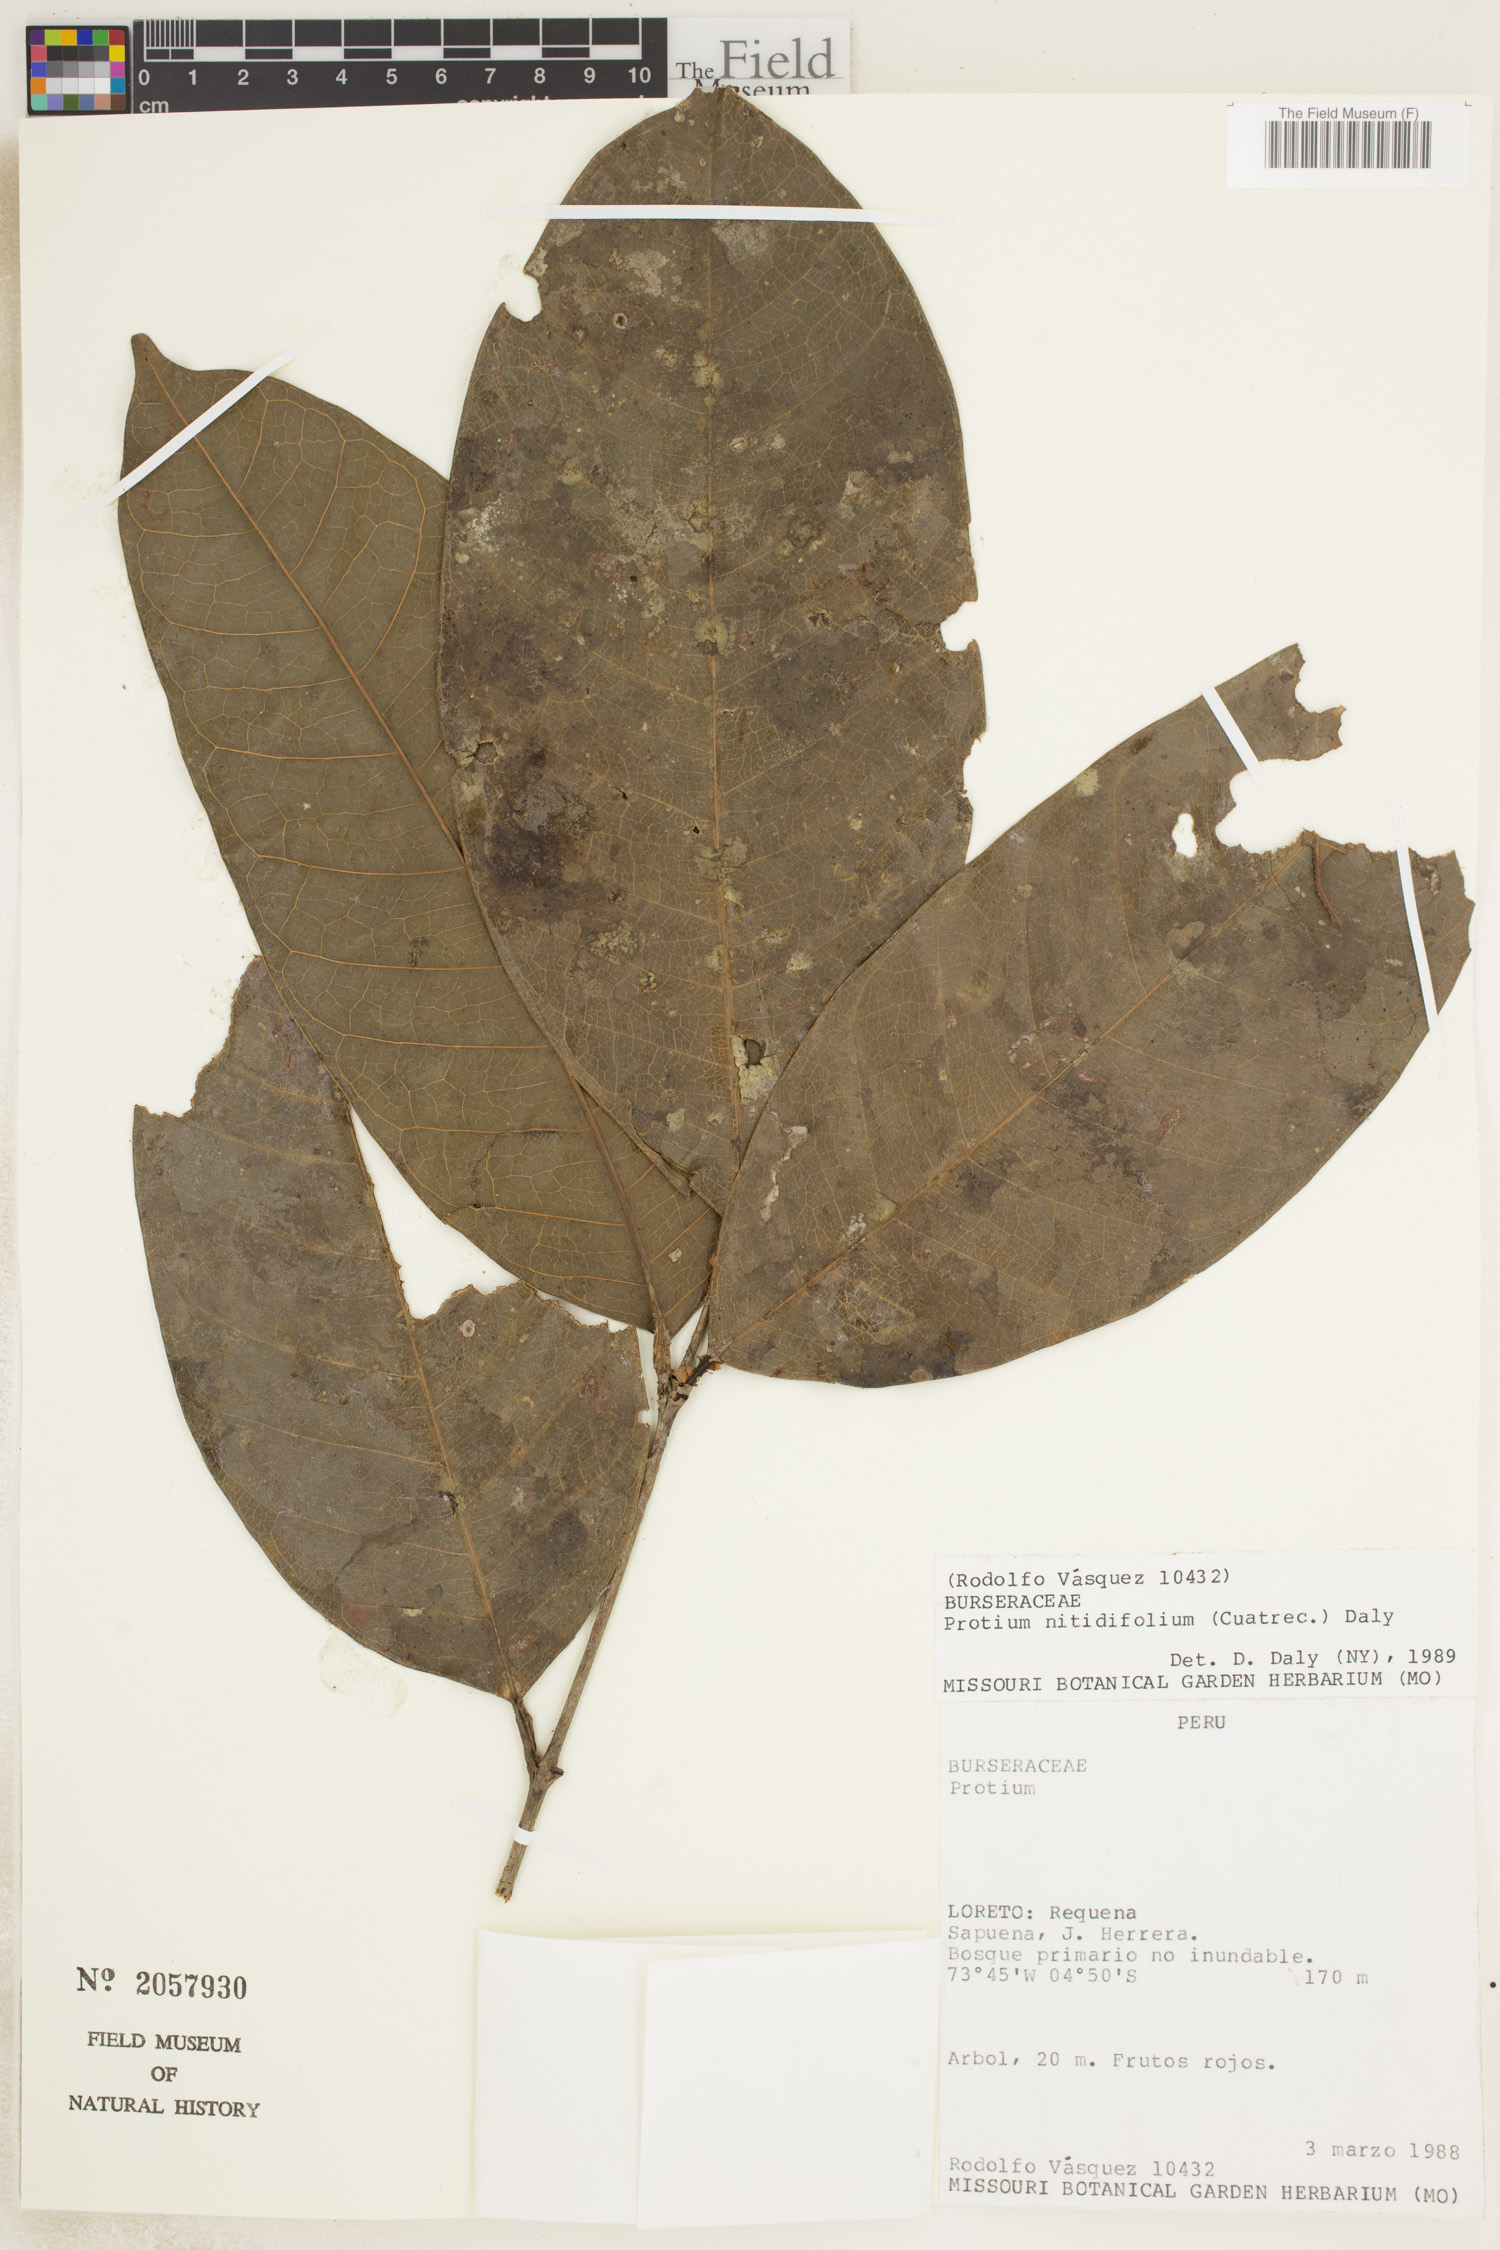 Protium nitidifolium image